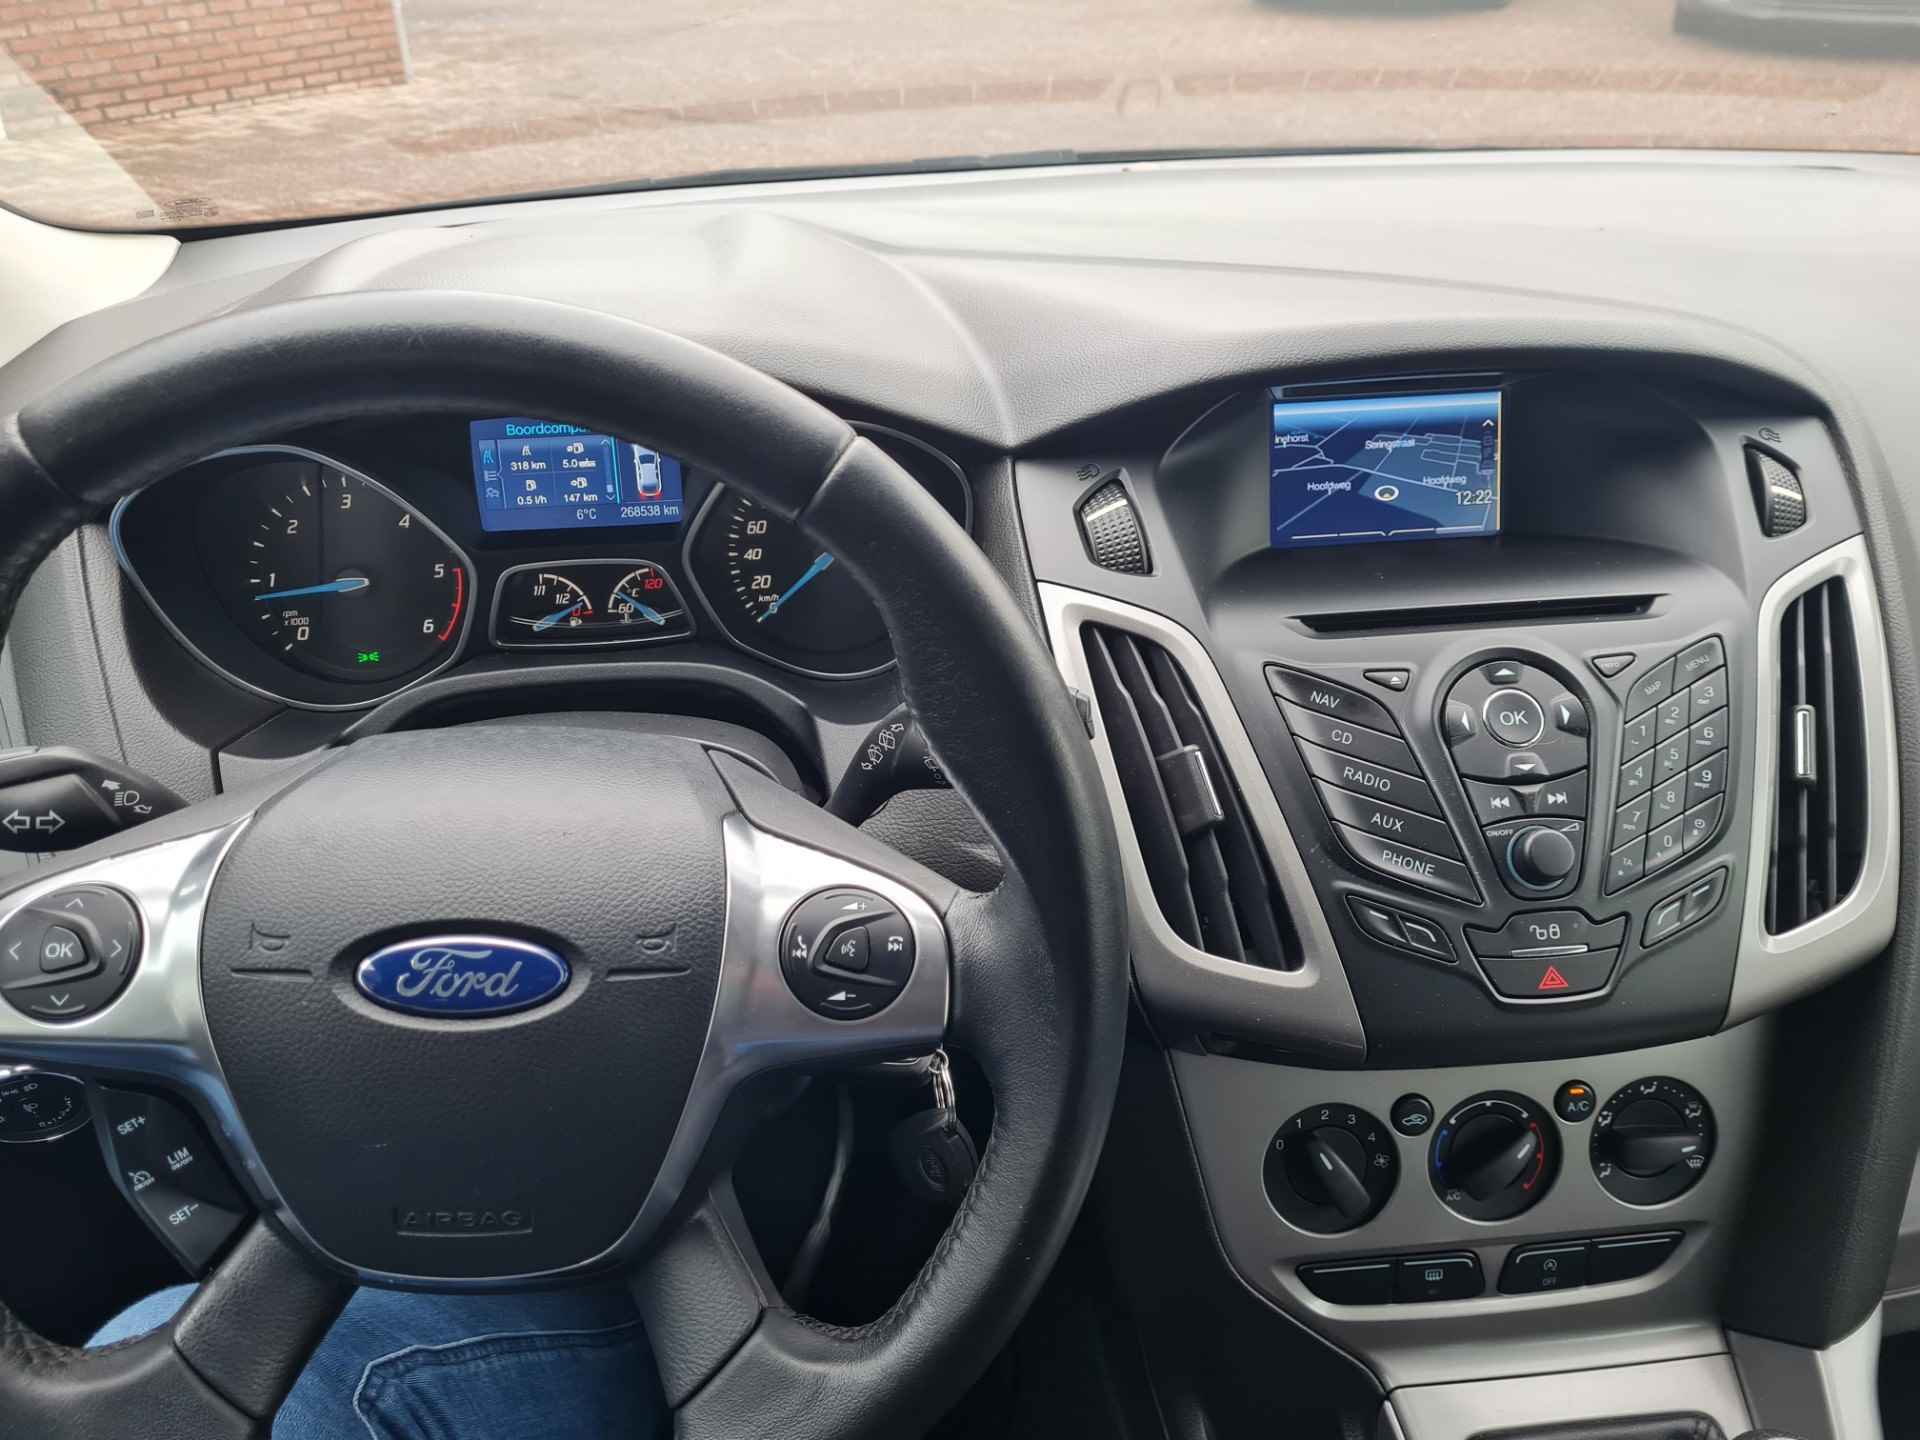 Ford Focus 1.6 TDCi 105pk 5-deurs Econetic Lease Trend - 13/14